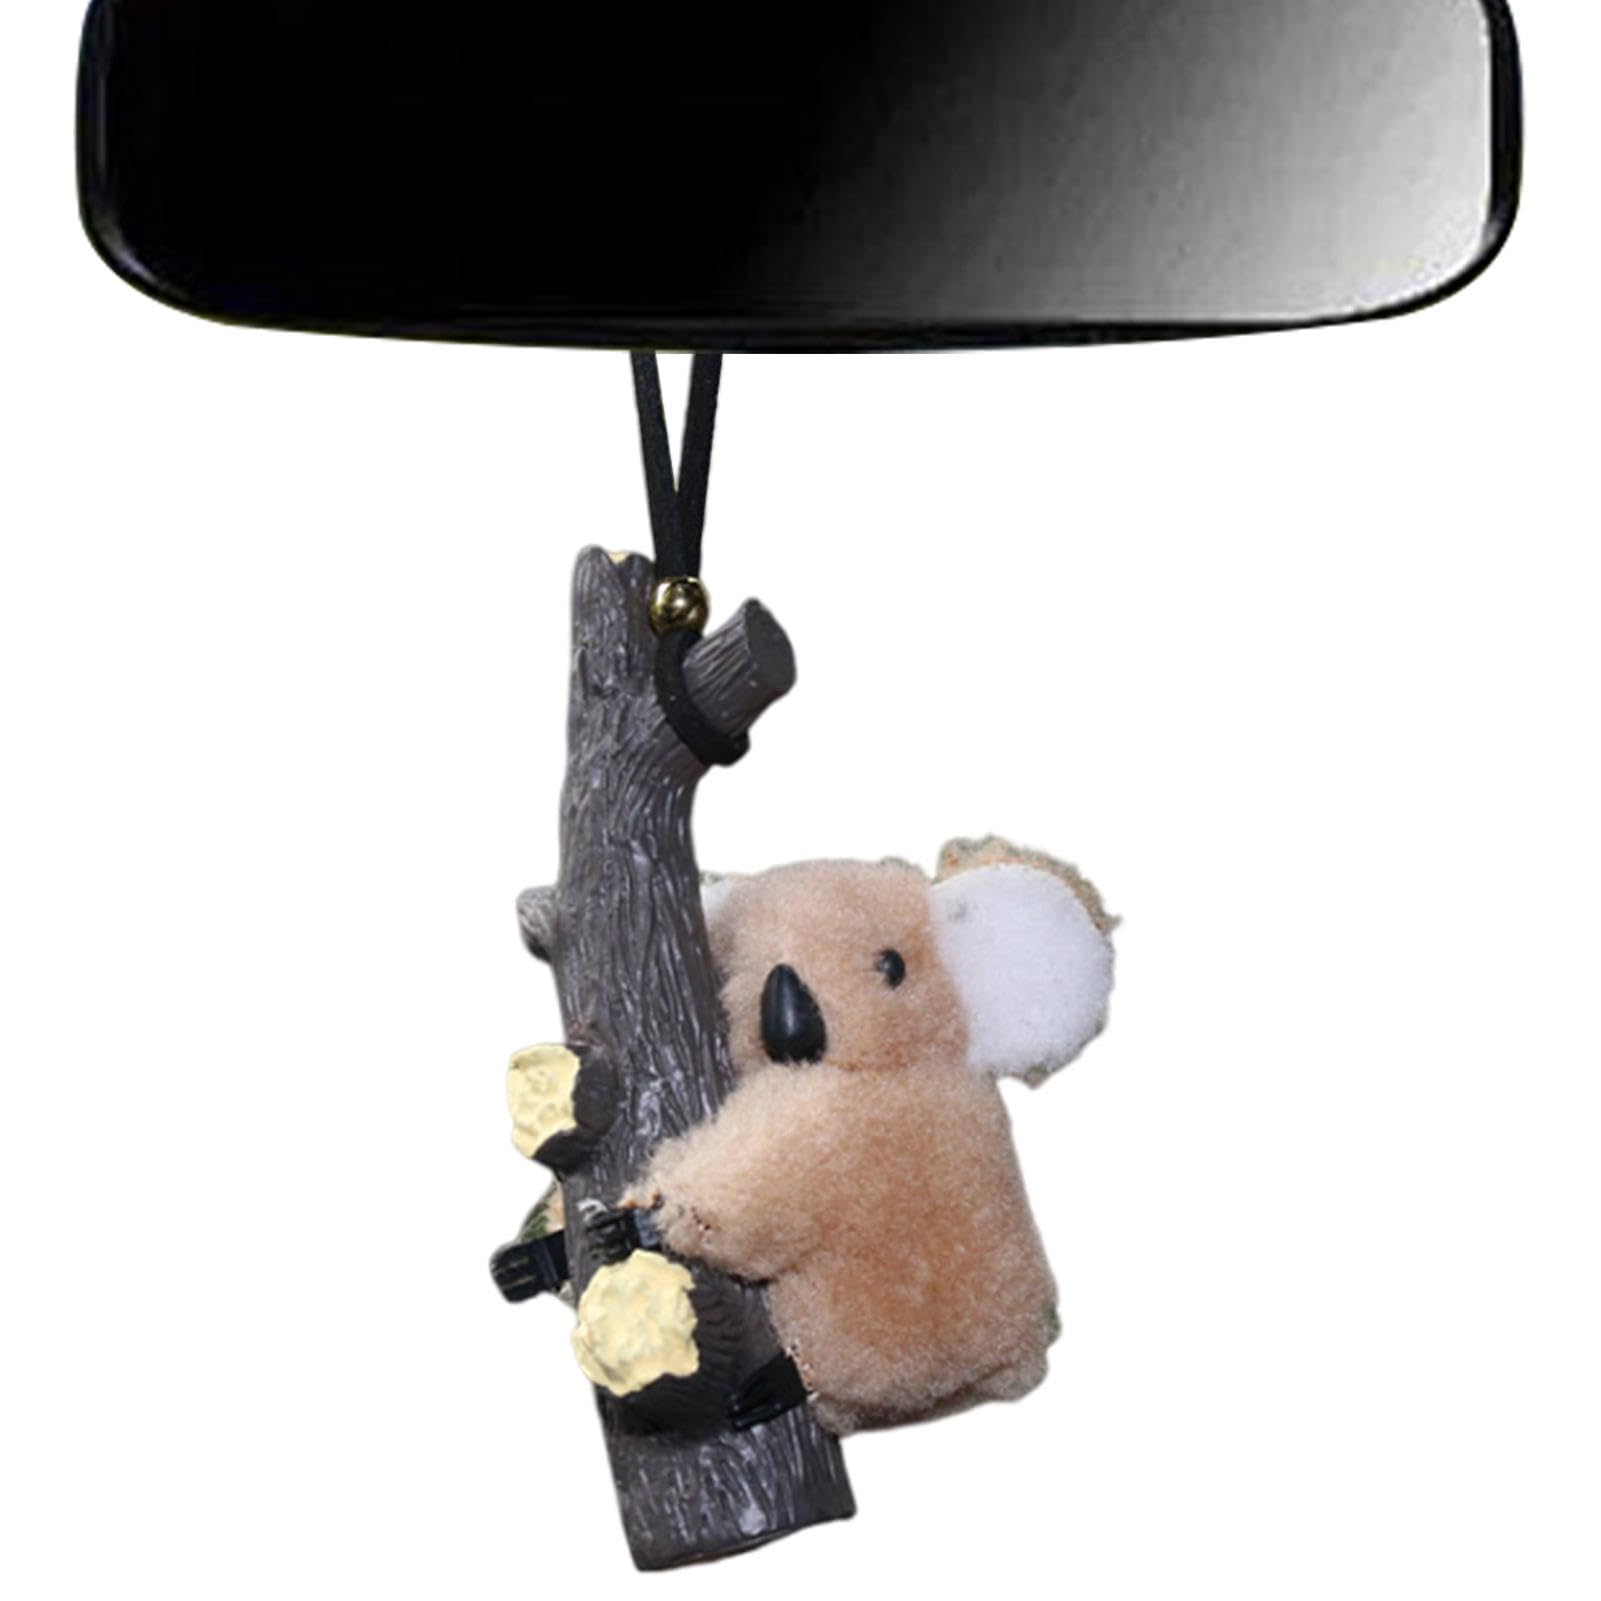 Voihamy Plüsch-Koala-Ornament für Auto,Auto-Plüsch-Koala-Anhänger | Rückspiegel-Plüsch-Koala aus Glas, niedliche Verzierung für | Rucksack-Tieranhänger, charmante Haushaltsdekoration für Minivan, von Voihamy